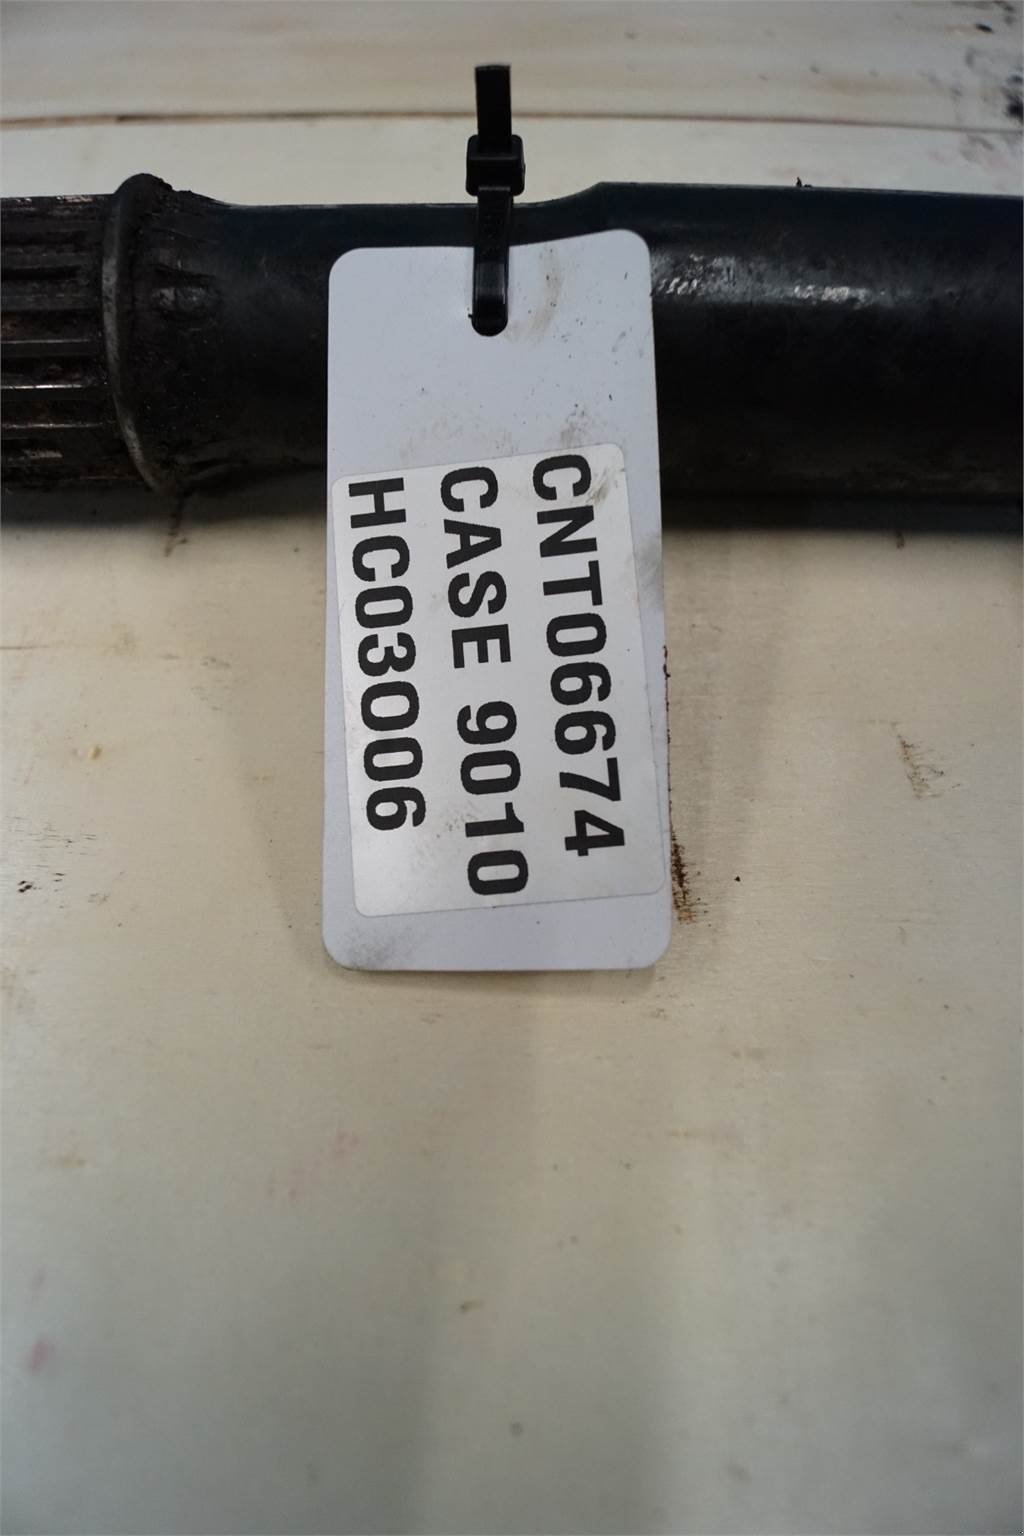 Rapsschneidwerk des Typs Case IH 9010, Gebrauchtmaschine in Hemmet (Bild 8)